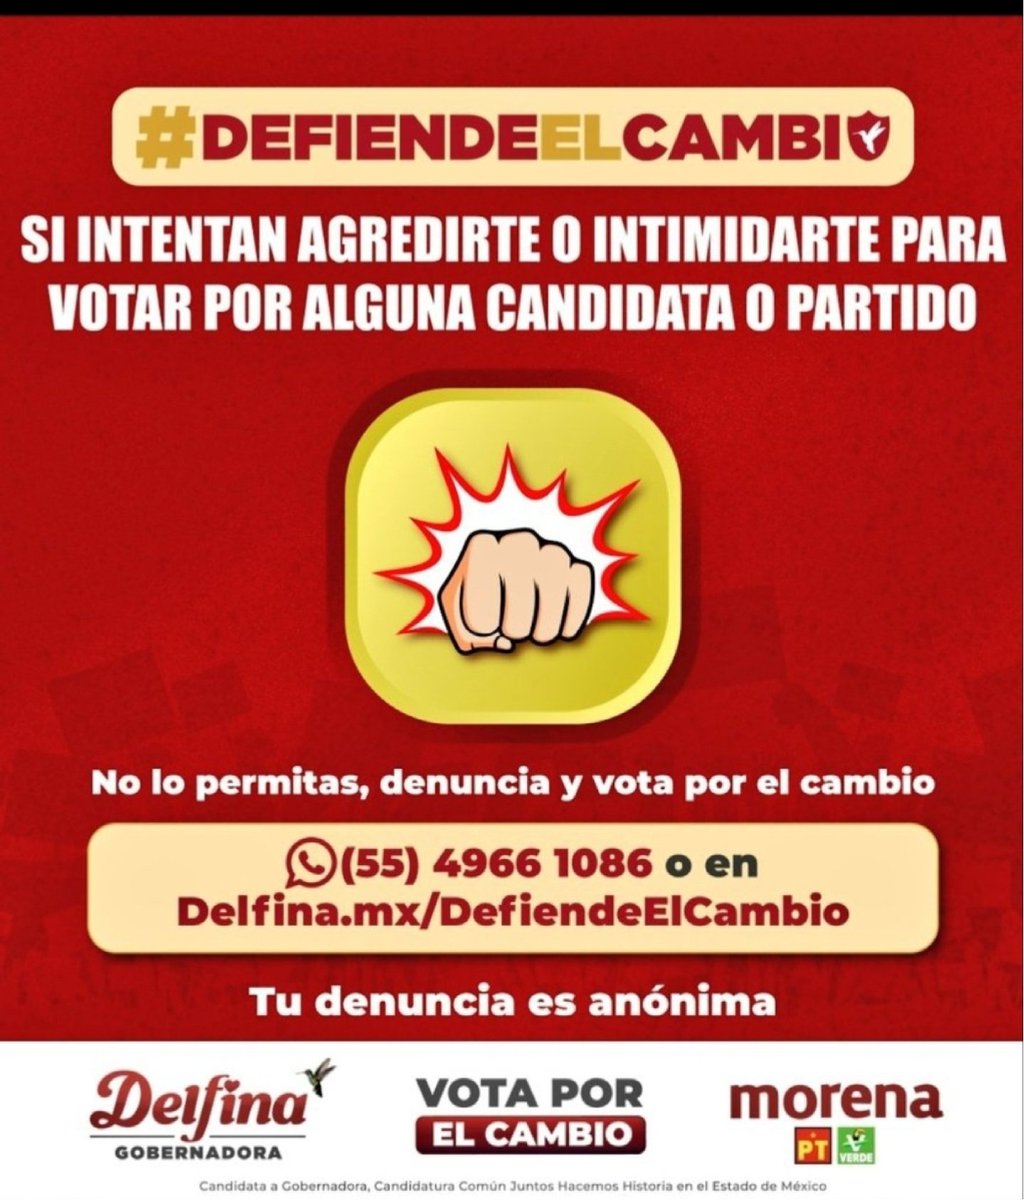 🇲🇽 A no dejarse!!!

#DelfinaGobernadora
#DelfinaGobernadoraEstadoDeMexico
#DelfinaArrasa  
#Morenaarrasa